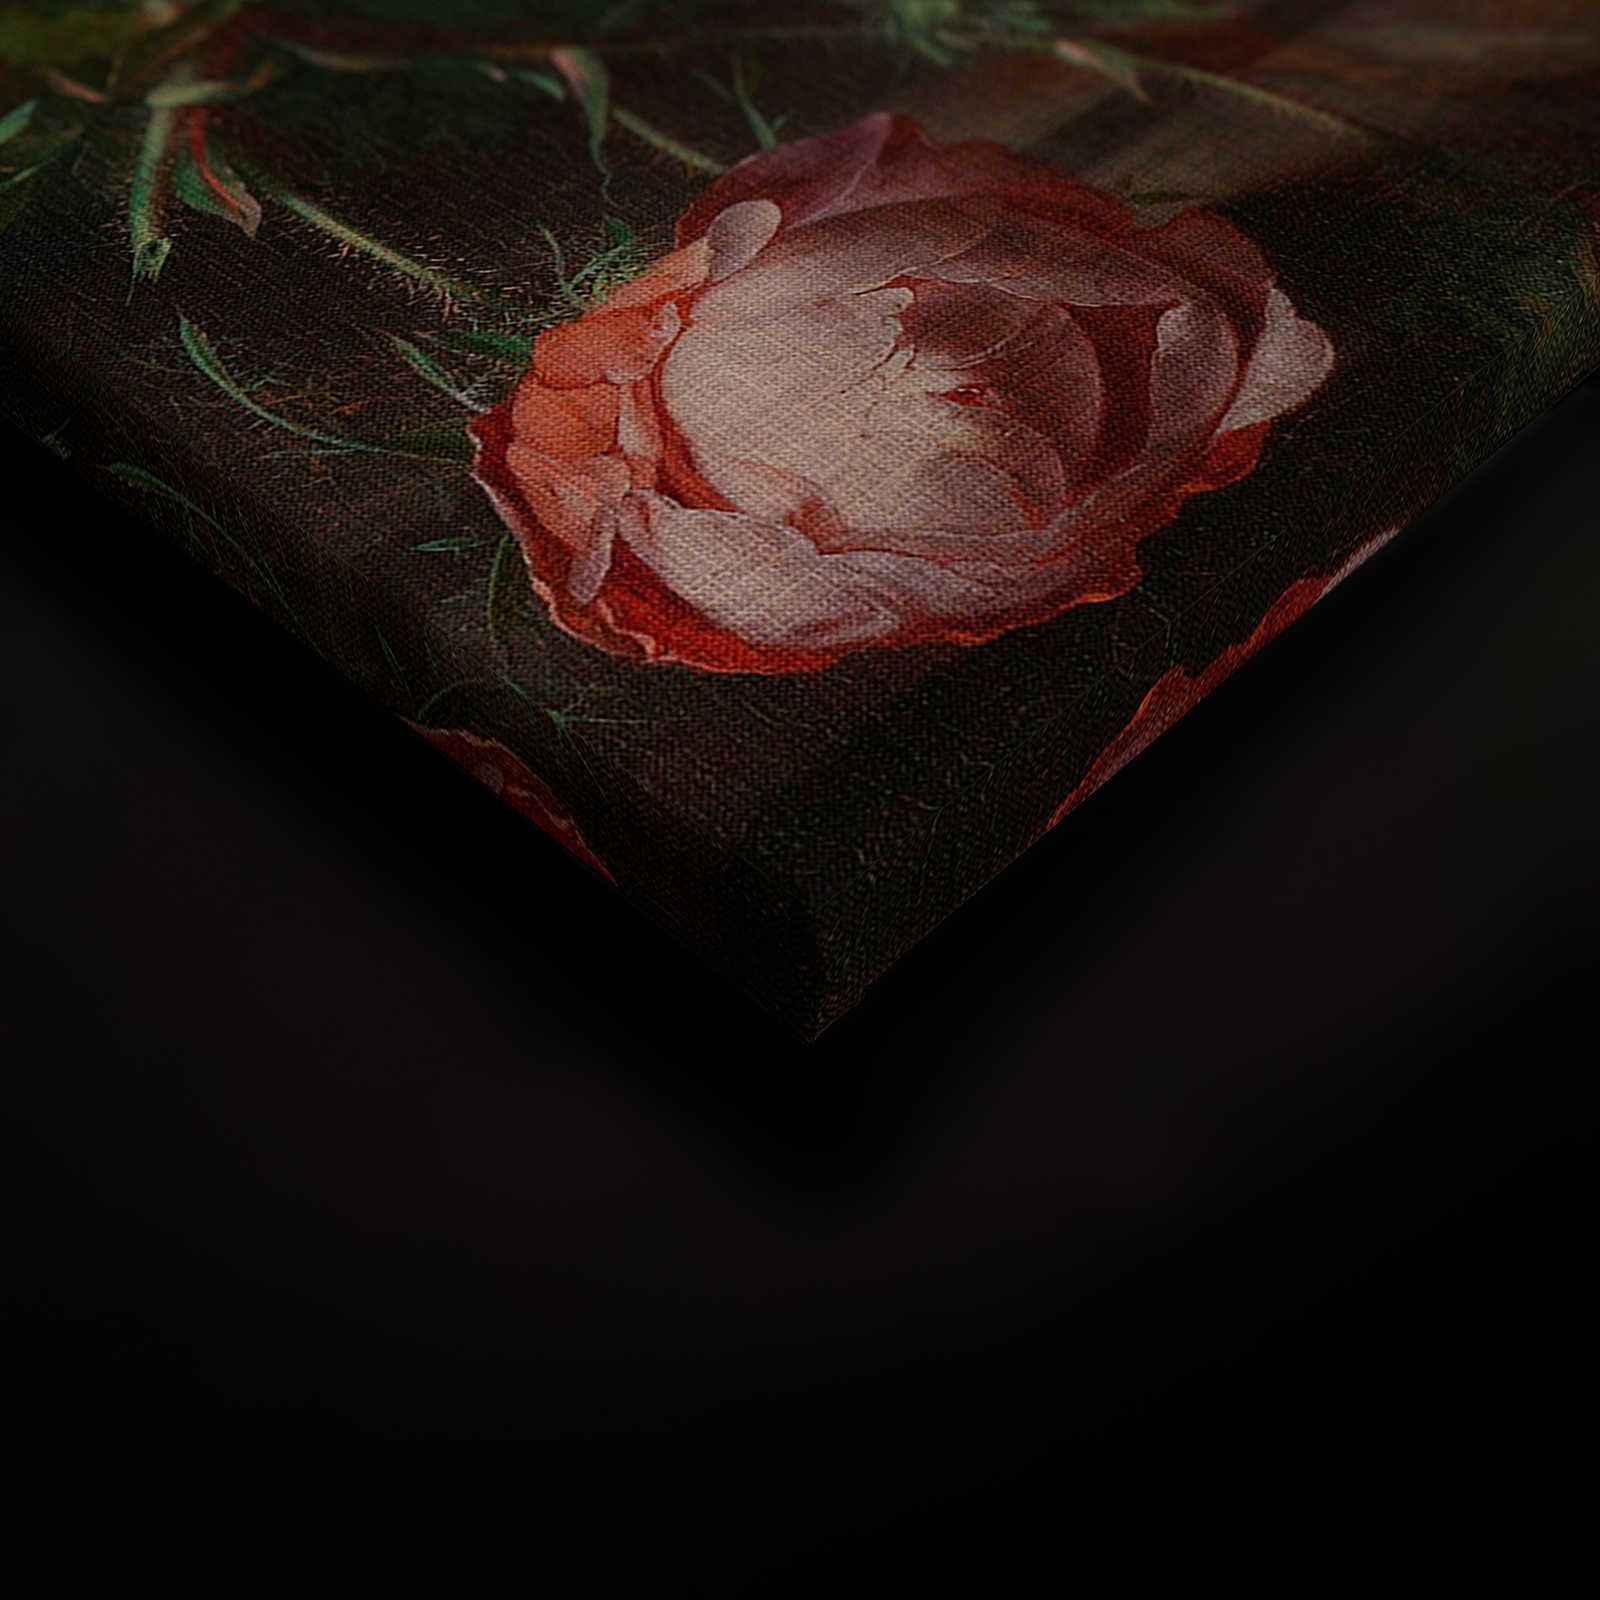             Artists Studio 3 - Peinture sur toile de fleurs Naturel morte - 0,80 m x 1,20 m
        